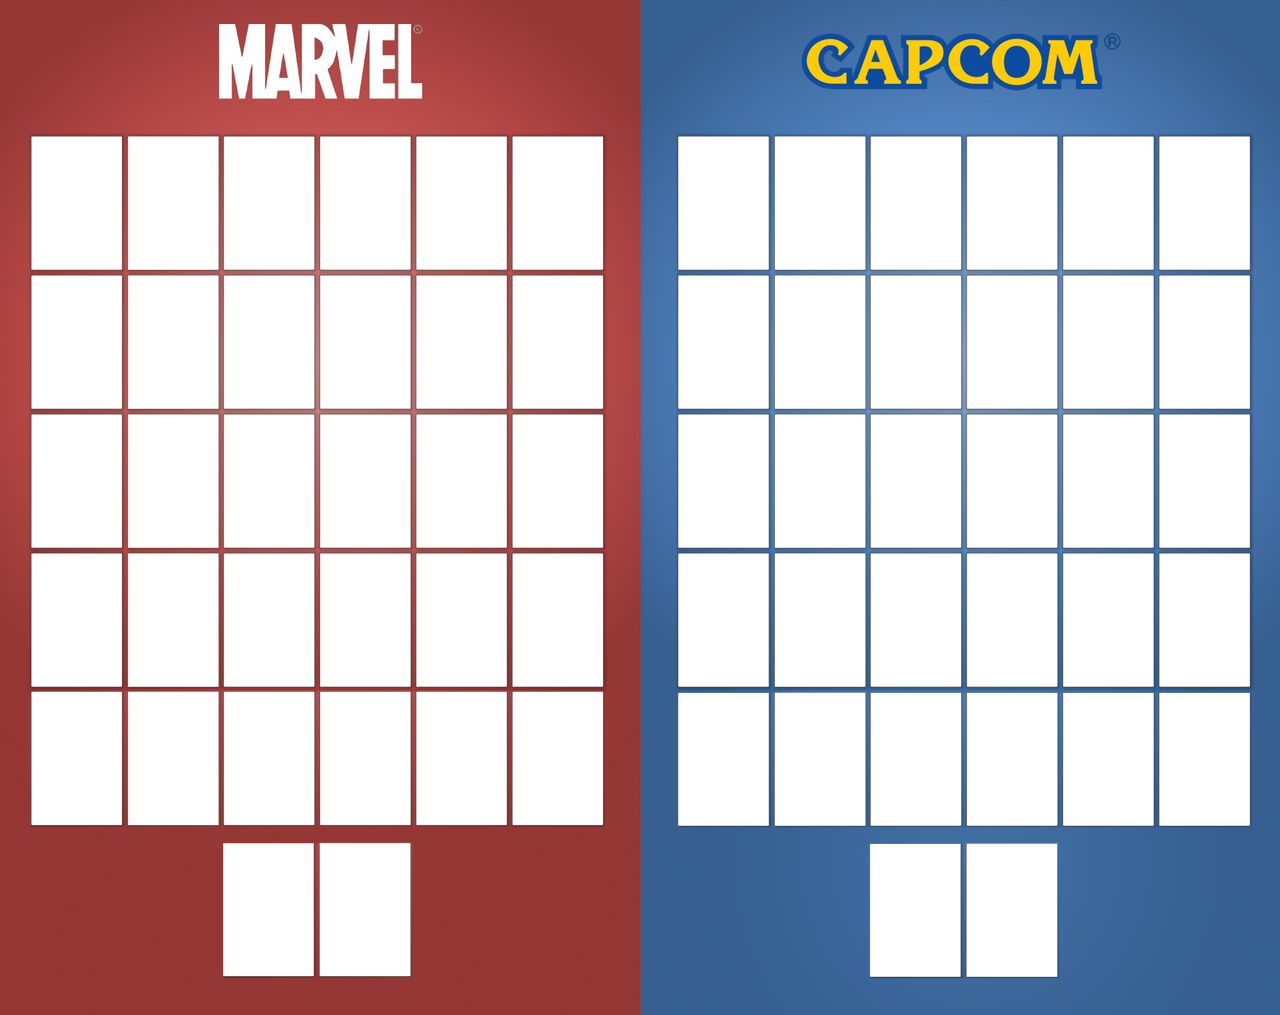 High Quality Grandbull's Marvel vs. Capcom Roster Blank Meme Template